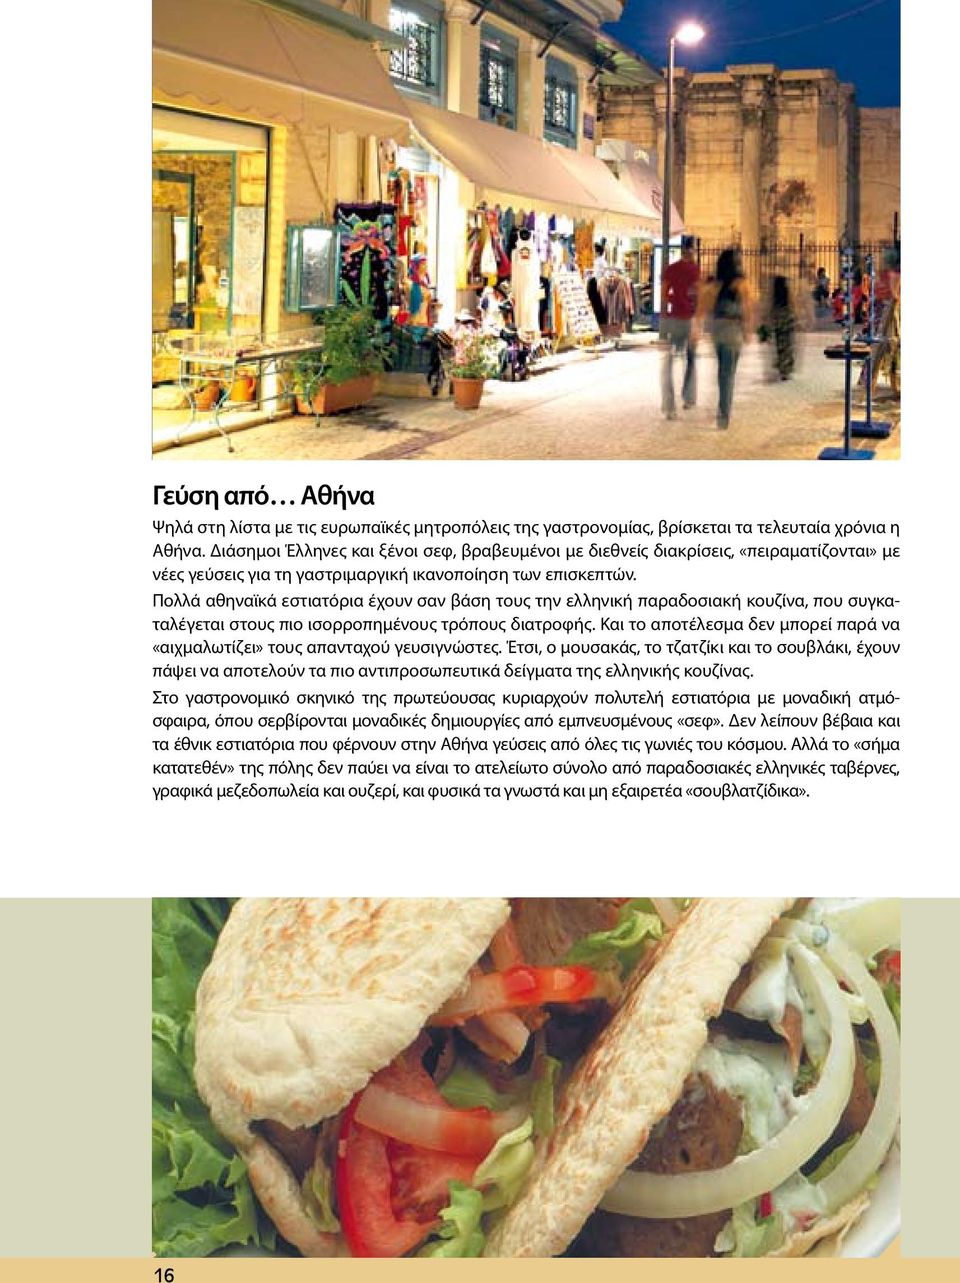 Πολλά αθηναϊκά εστιατόρια έχουν σαν βάση τους την ελληνική παραδοσιακή κουζίνα, που συγκαταλέγεται στους πιο ισορροπημένους τρόπους διατροφής.